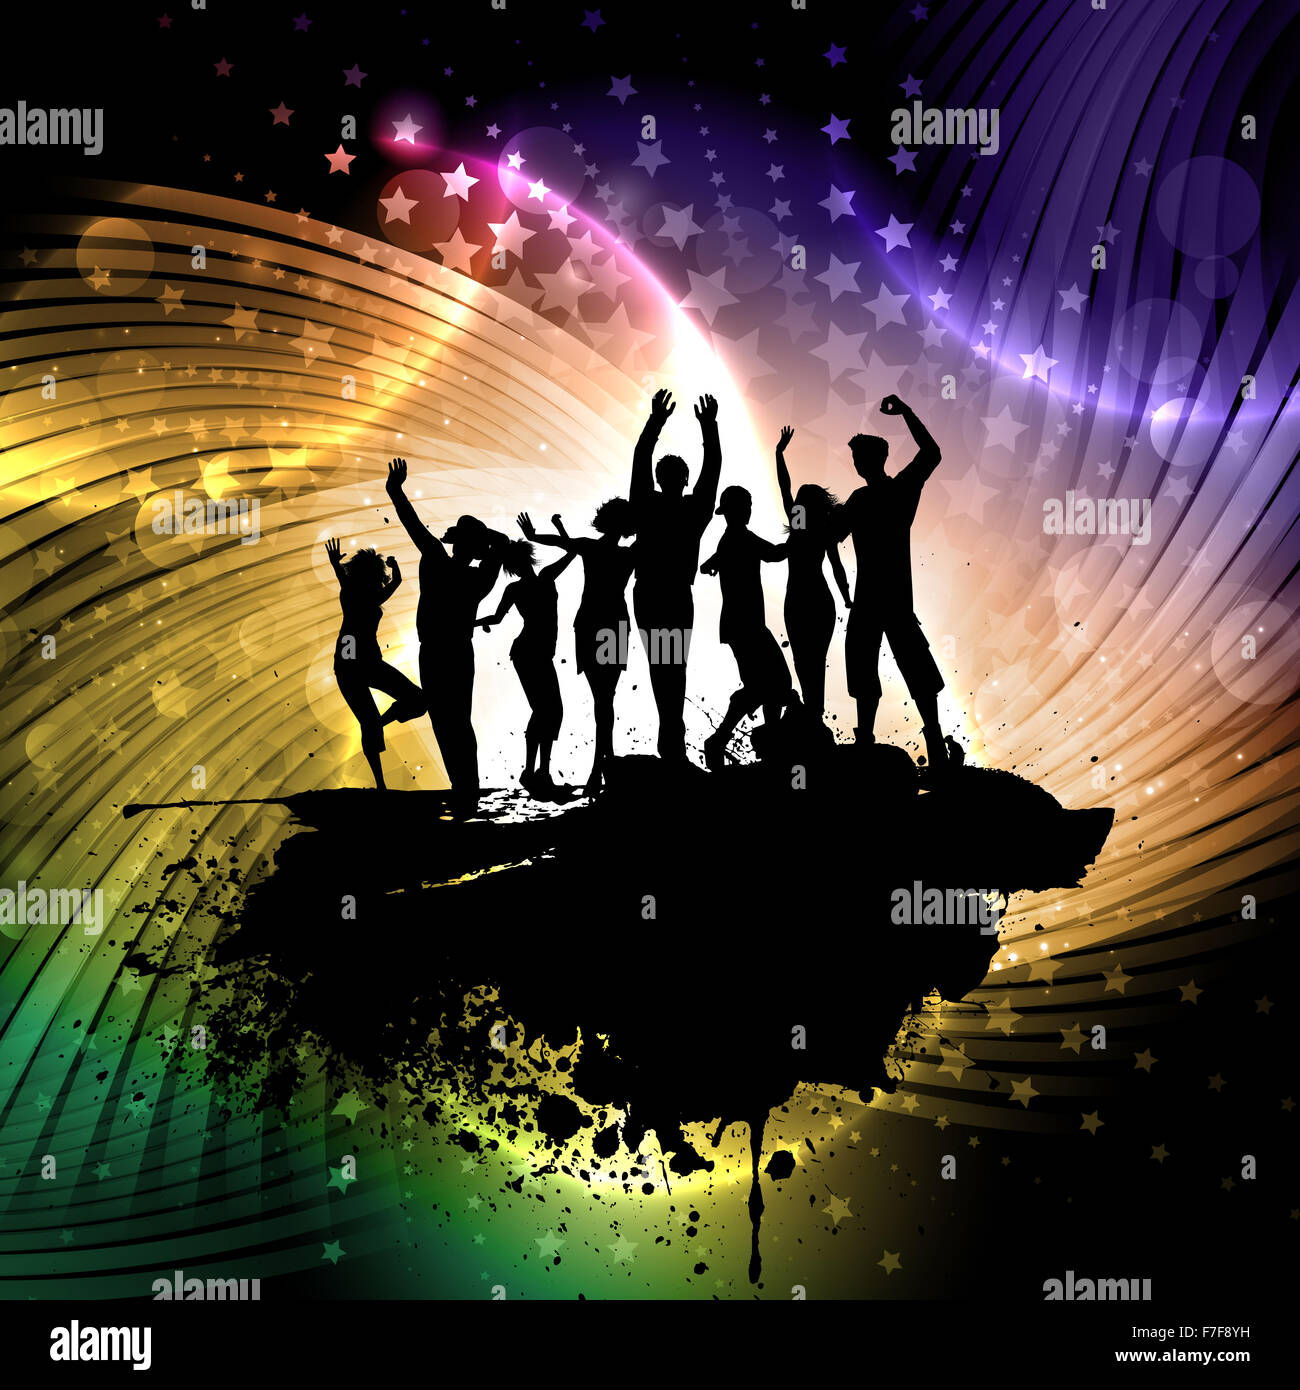 Grunge-Stil-Hintergrund mit Silhouetten von Menschen tanzen Stockfoto